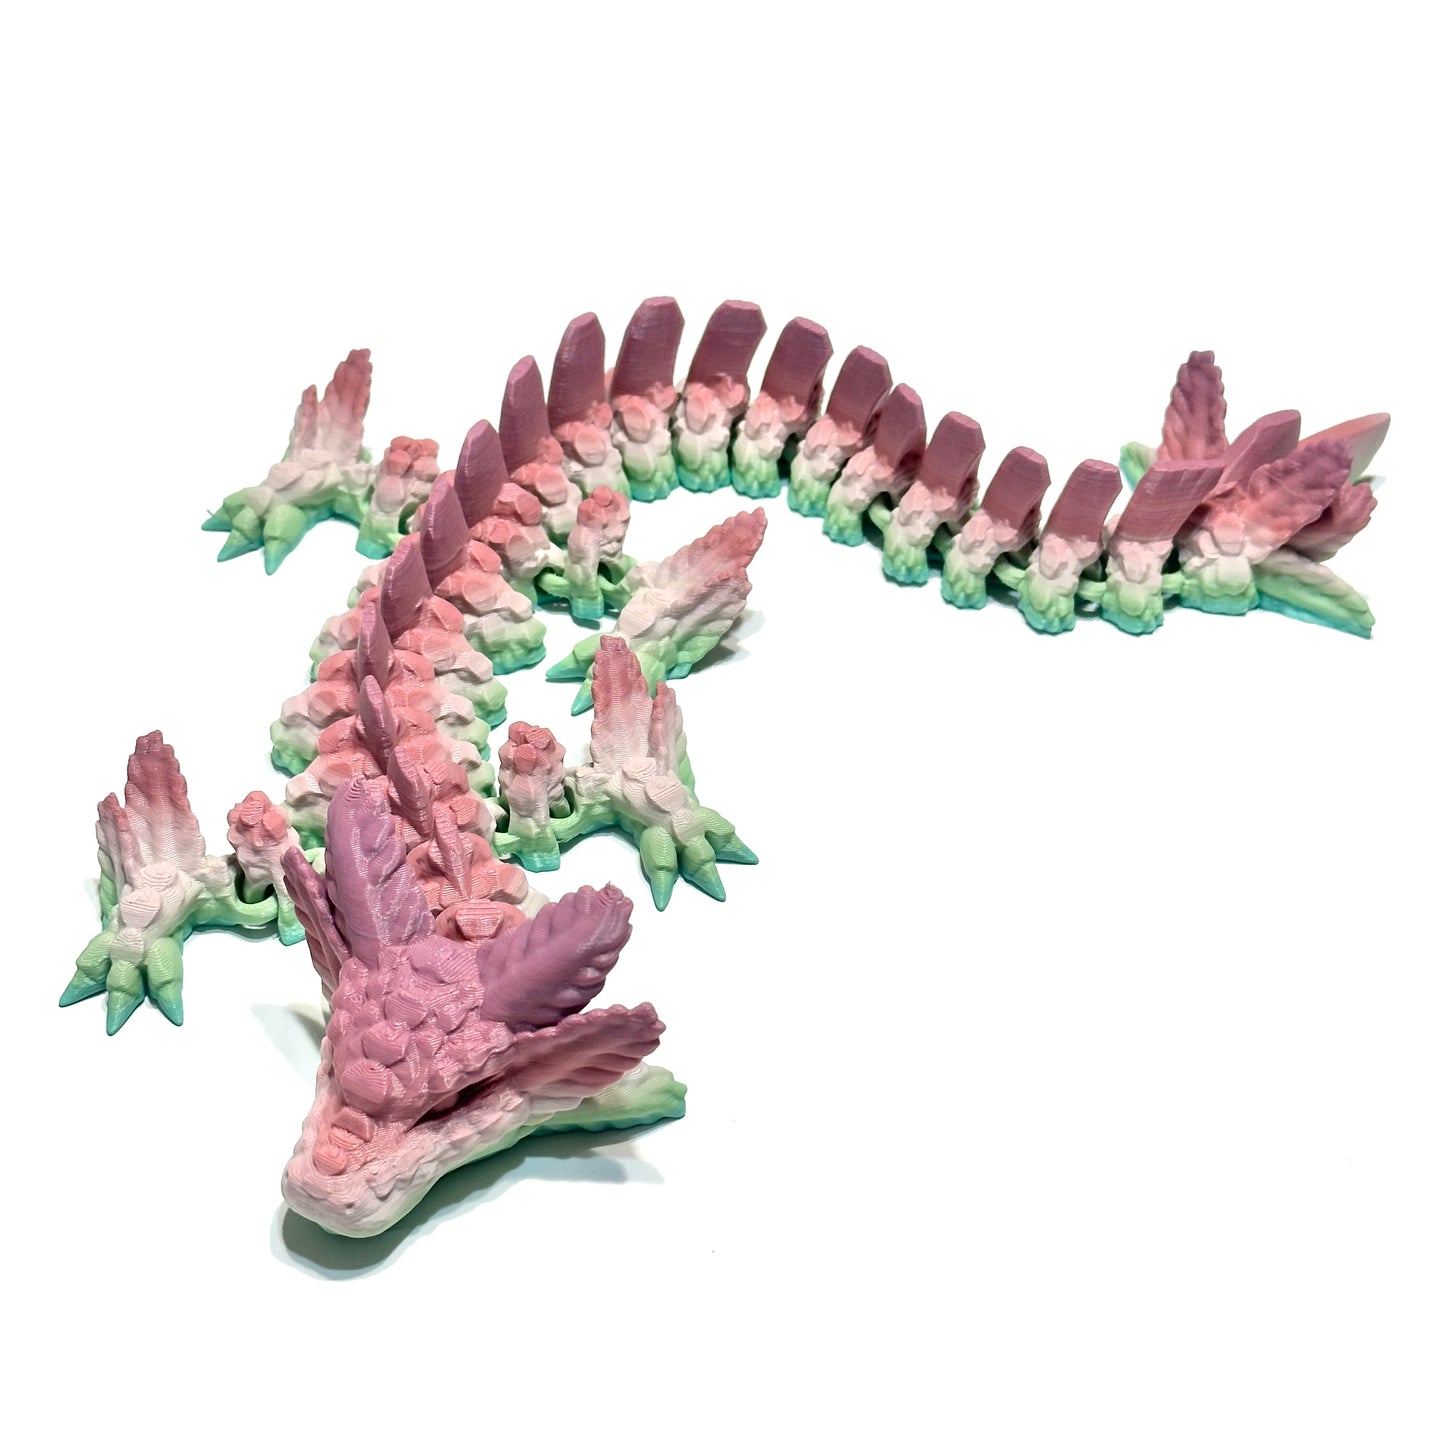 Axolotl Dragon - 3D Printed Articulating Figure no